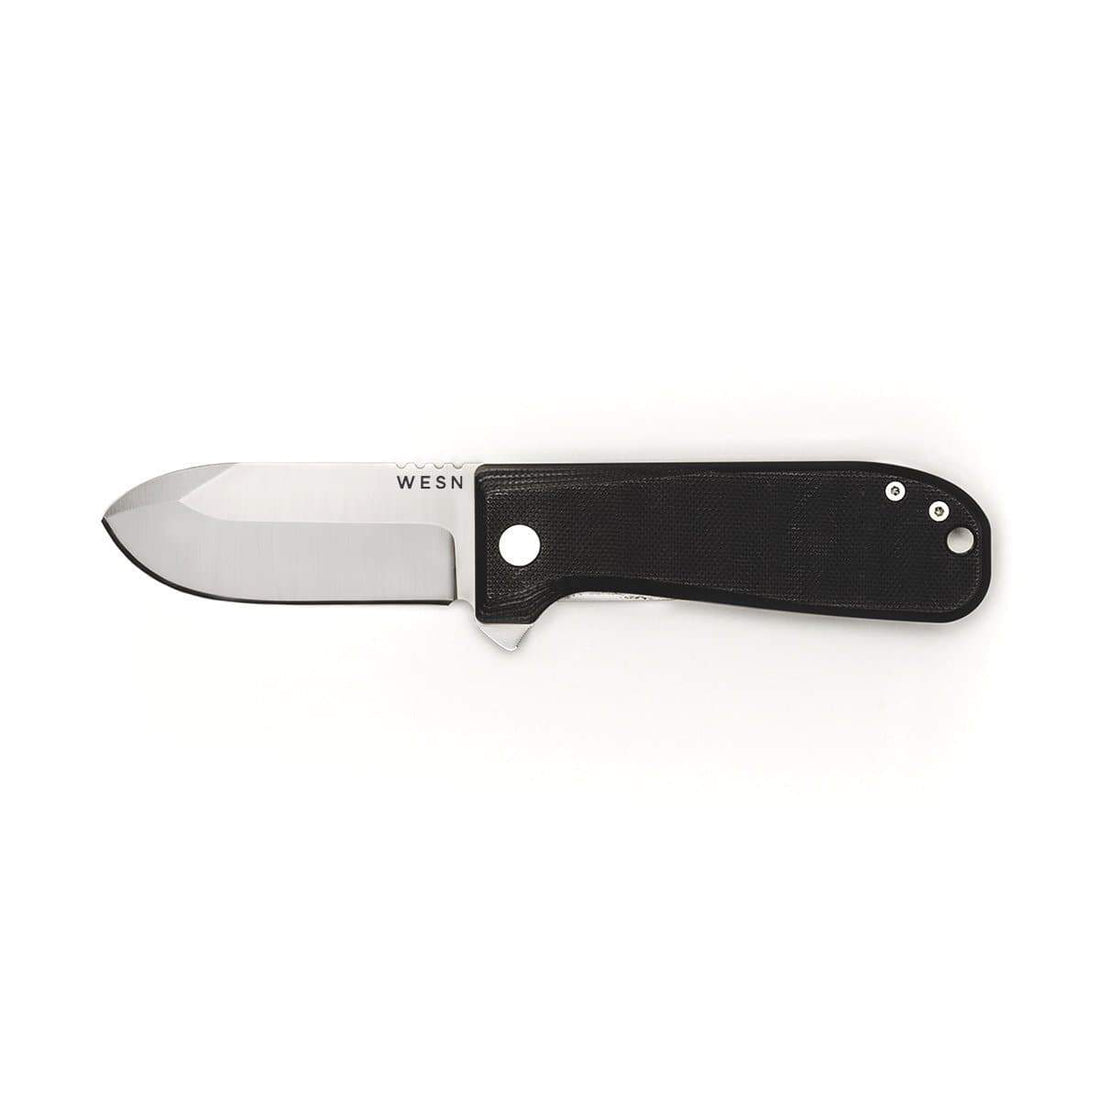 Allman G10 Pocket Knife